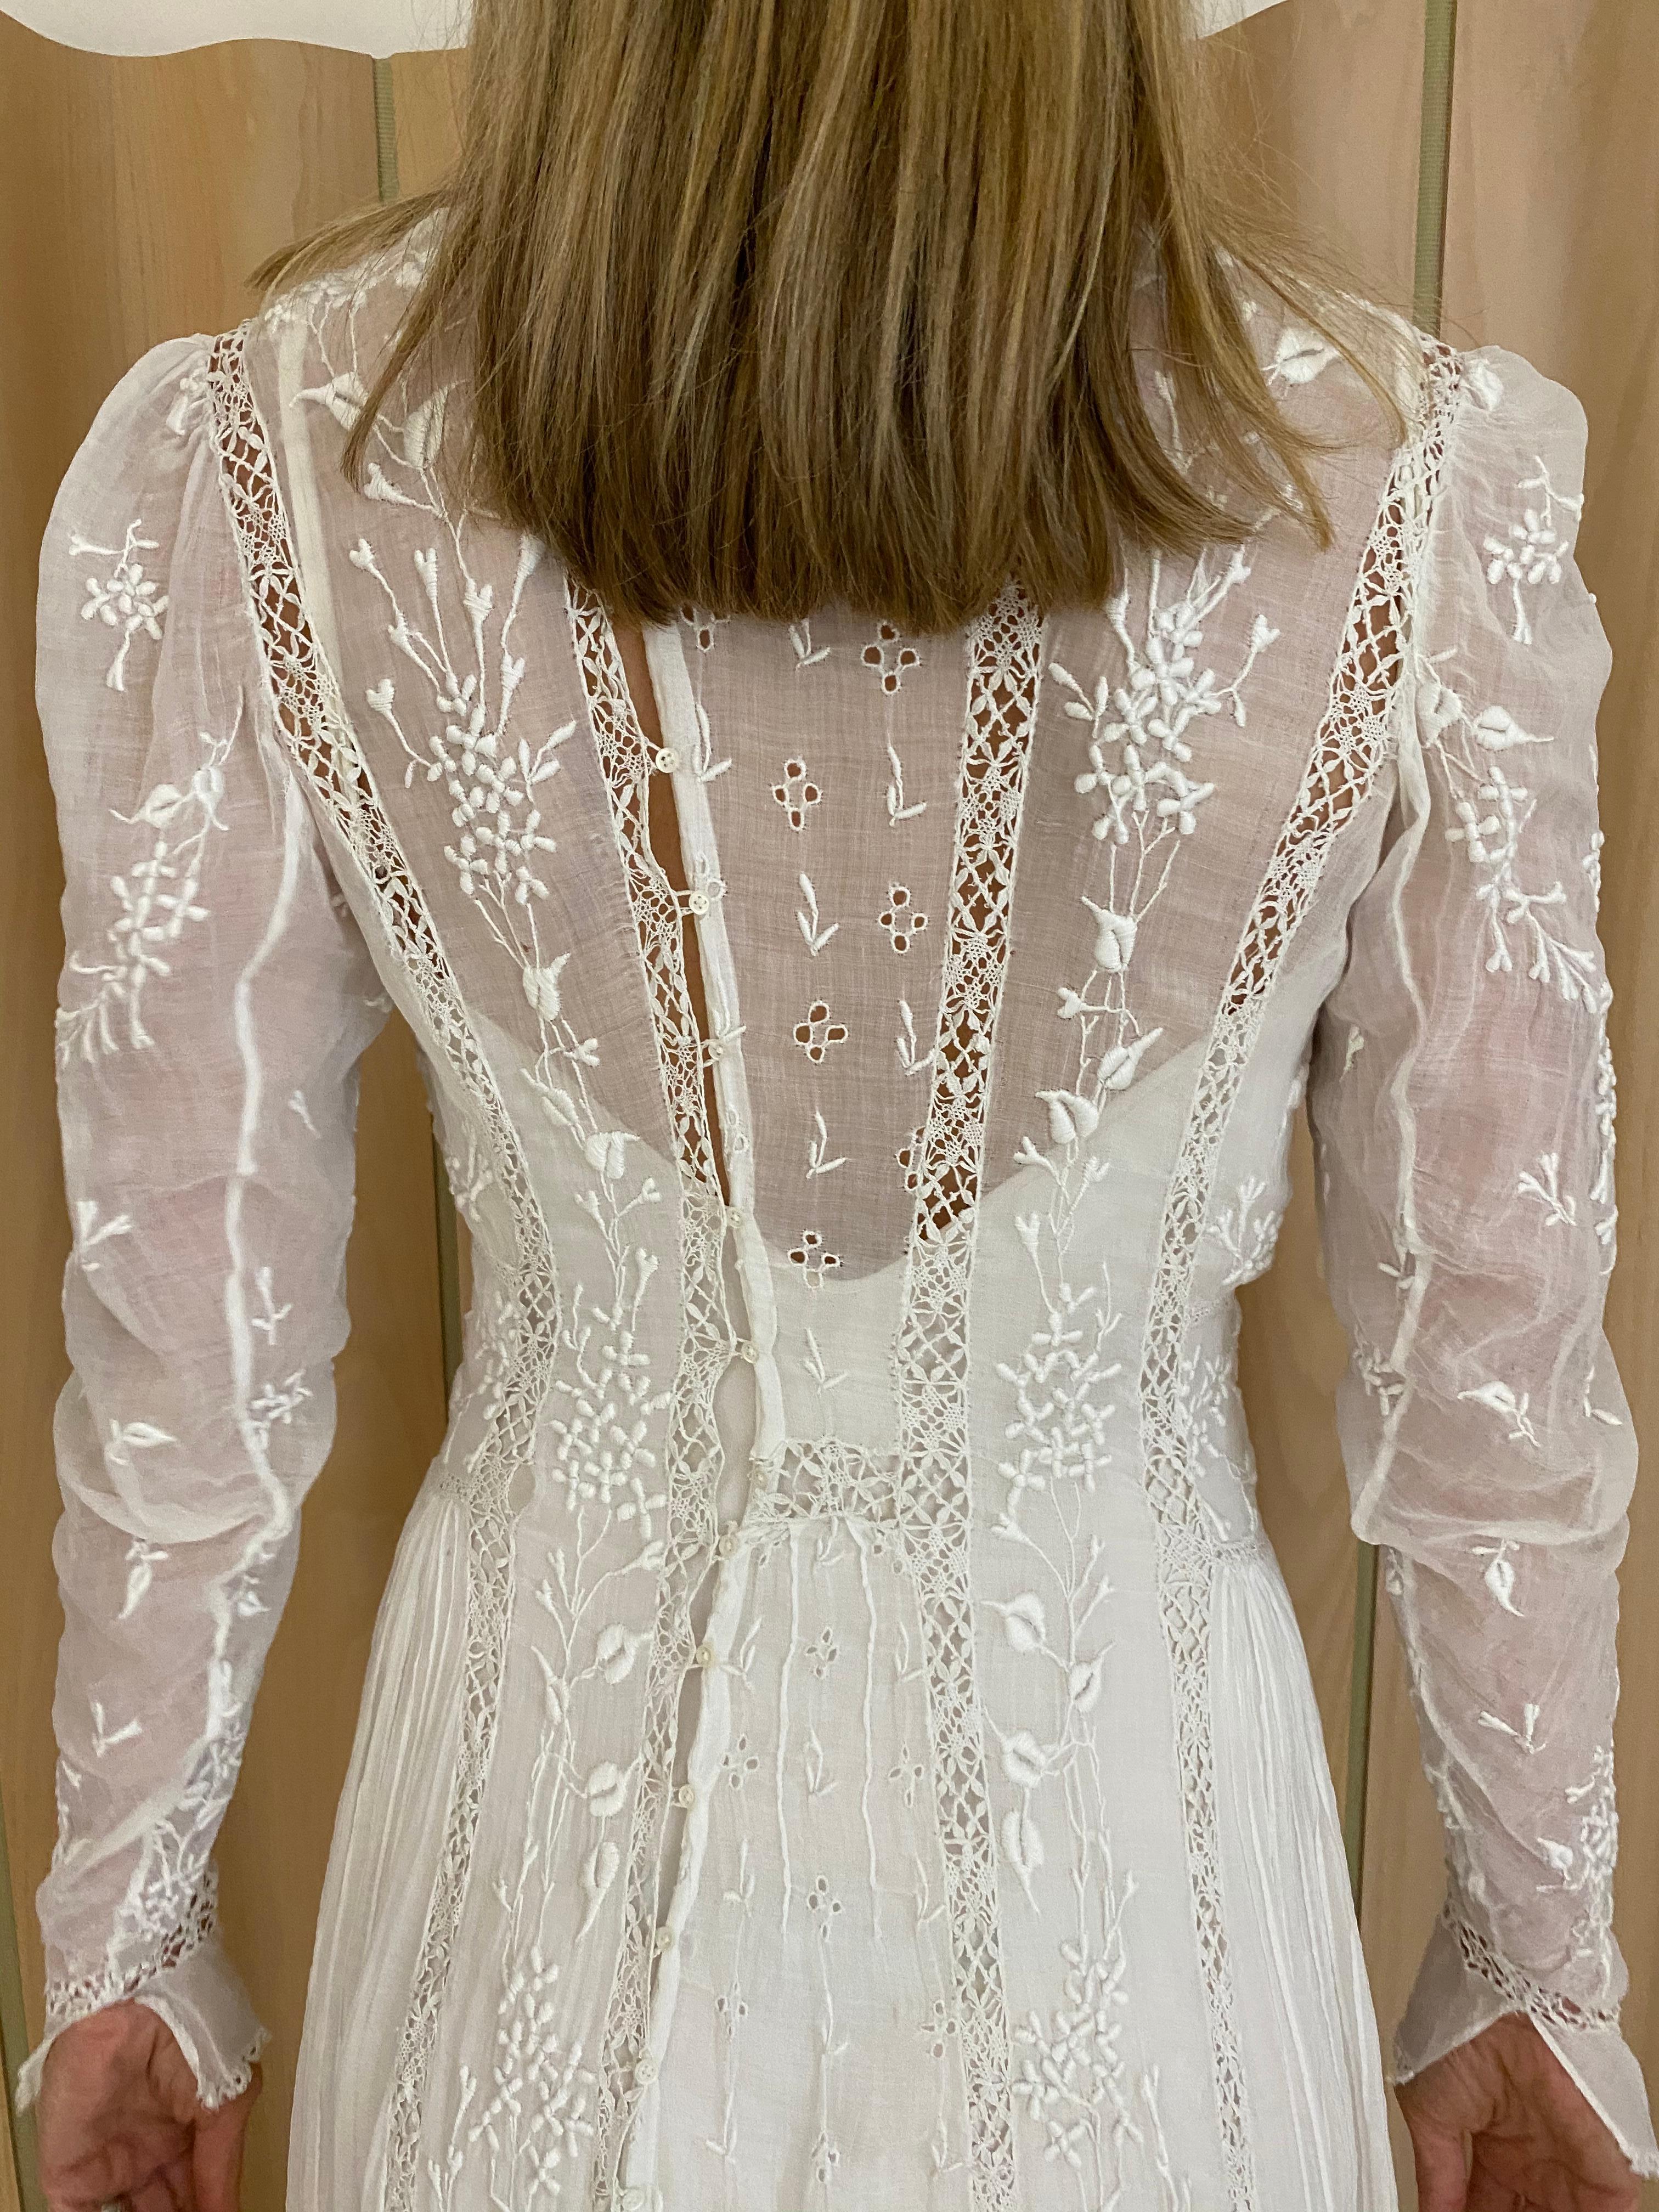 Women's Edwardian White Cotton Embroidered Wedding Dress